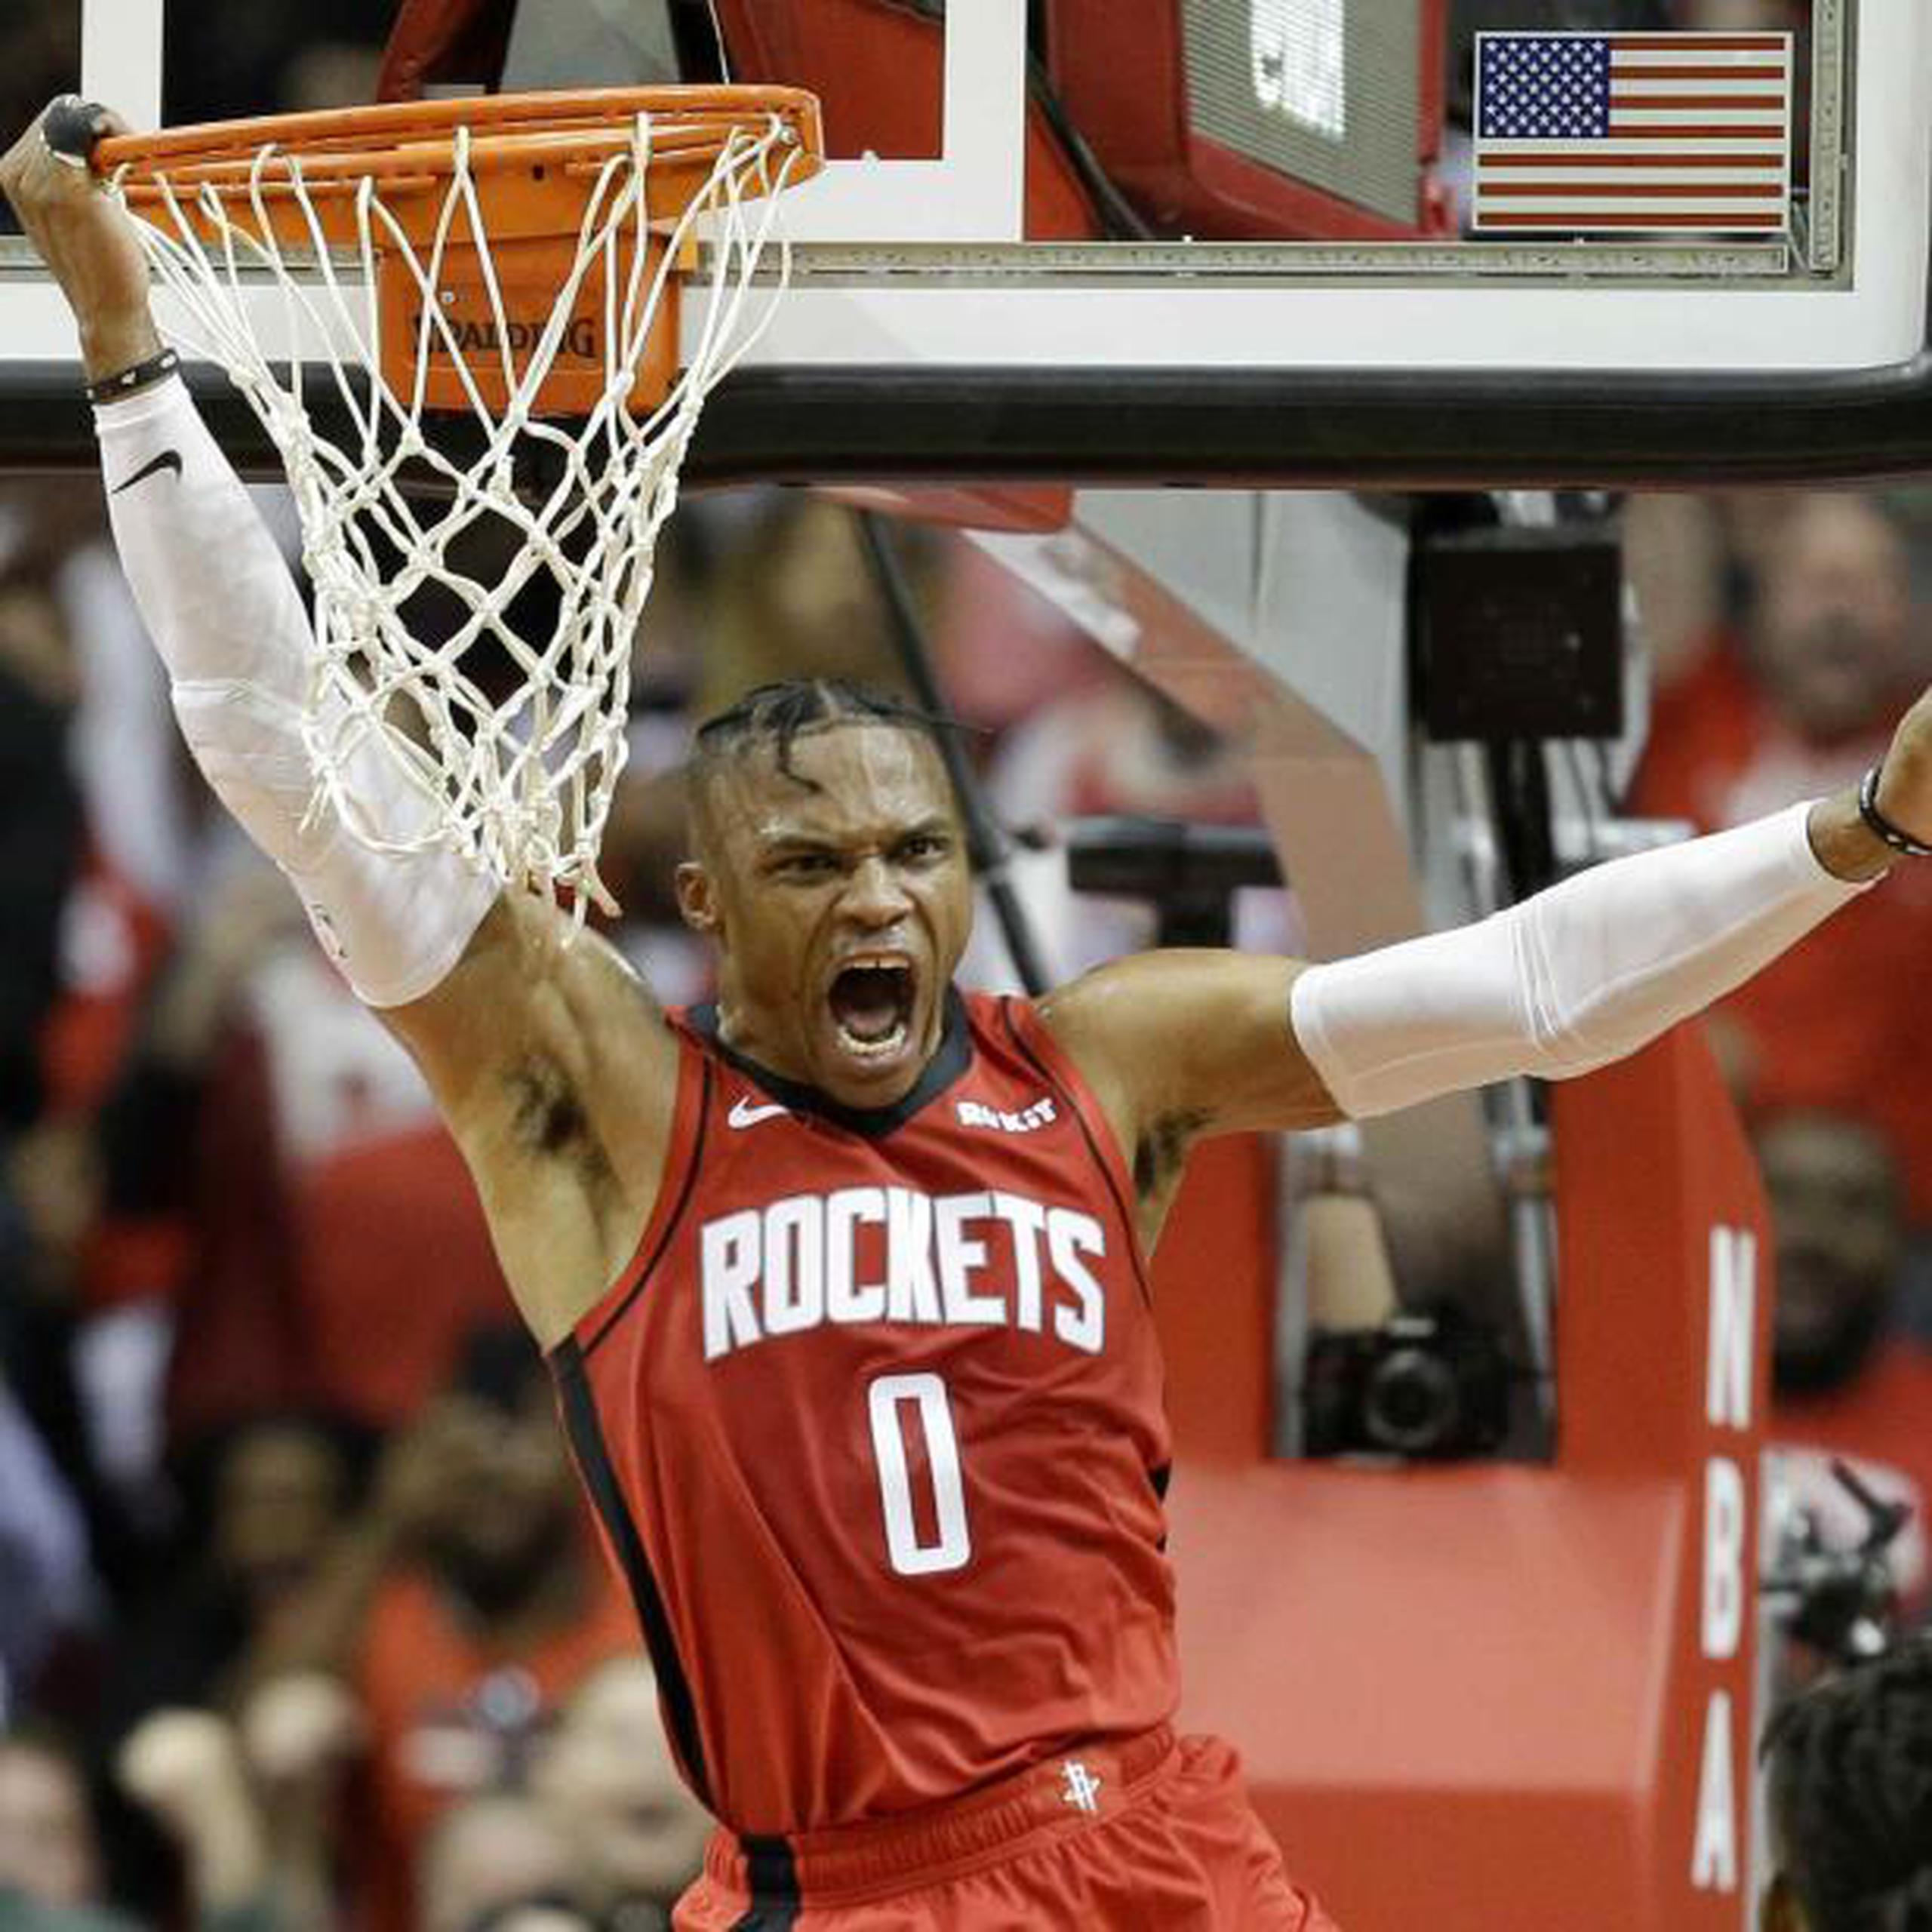 Russell Westbrook realizó un espectacular donqueo en un pase de James Harden durante su primer juego juntos con los Rockets, que sin embargo fueron derrotados el jueves por Giannis Antetokounmpo y los Bucks de Milwaukee. (AP / Eric Christian Smith)